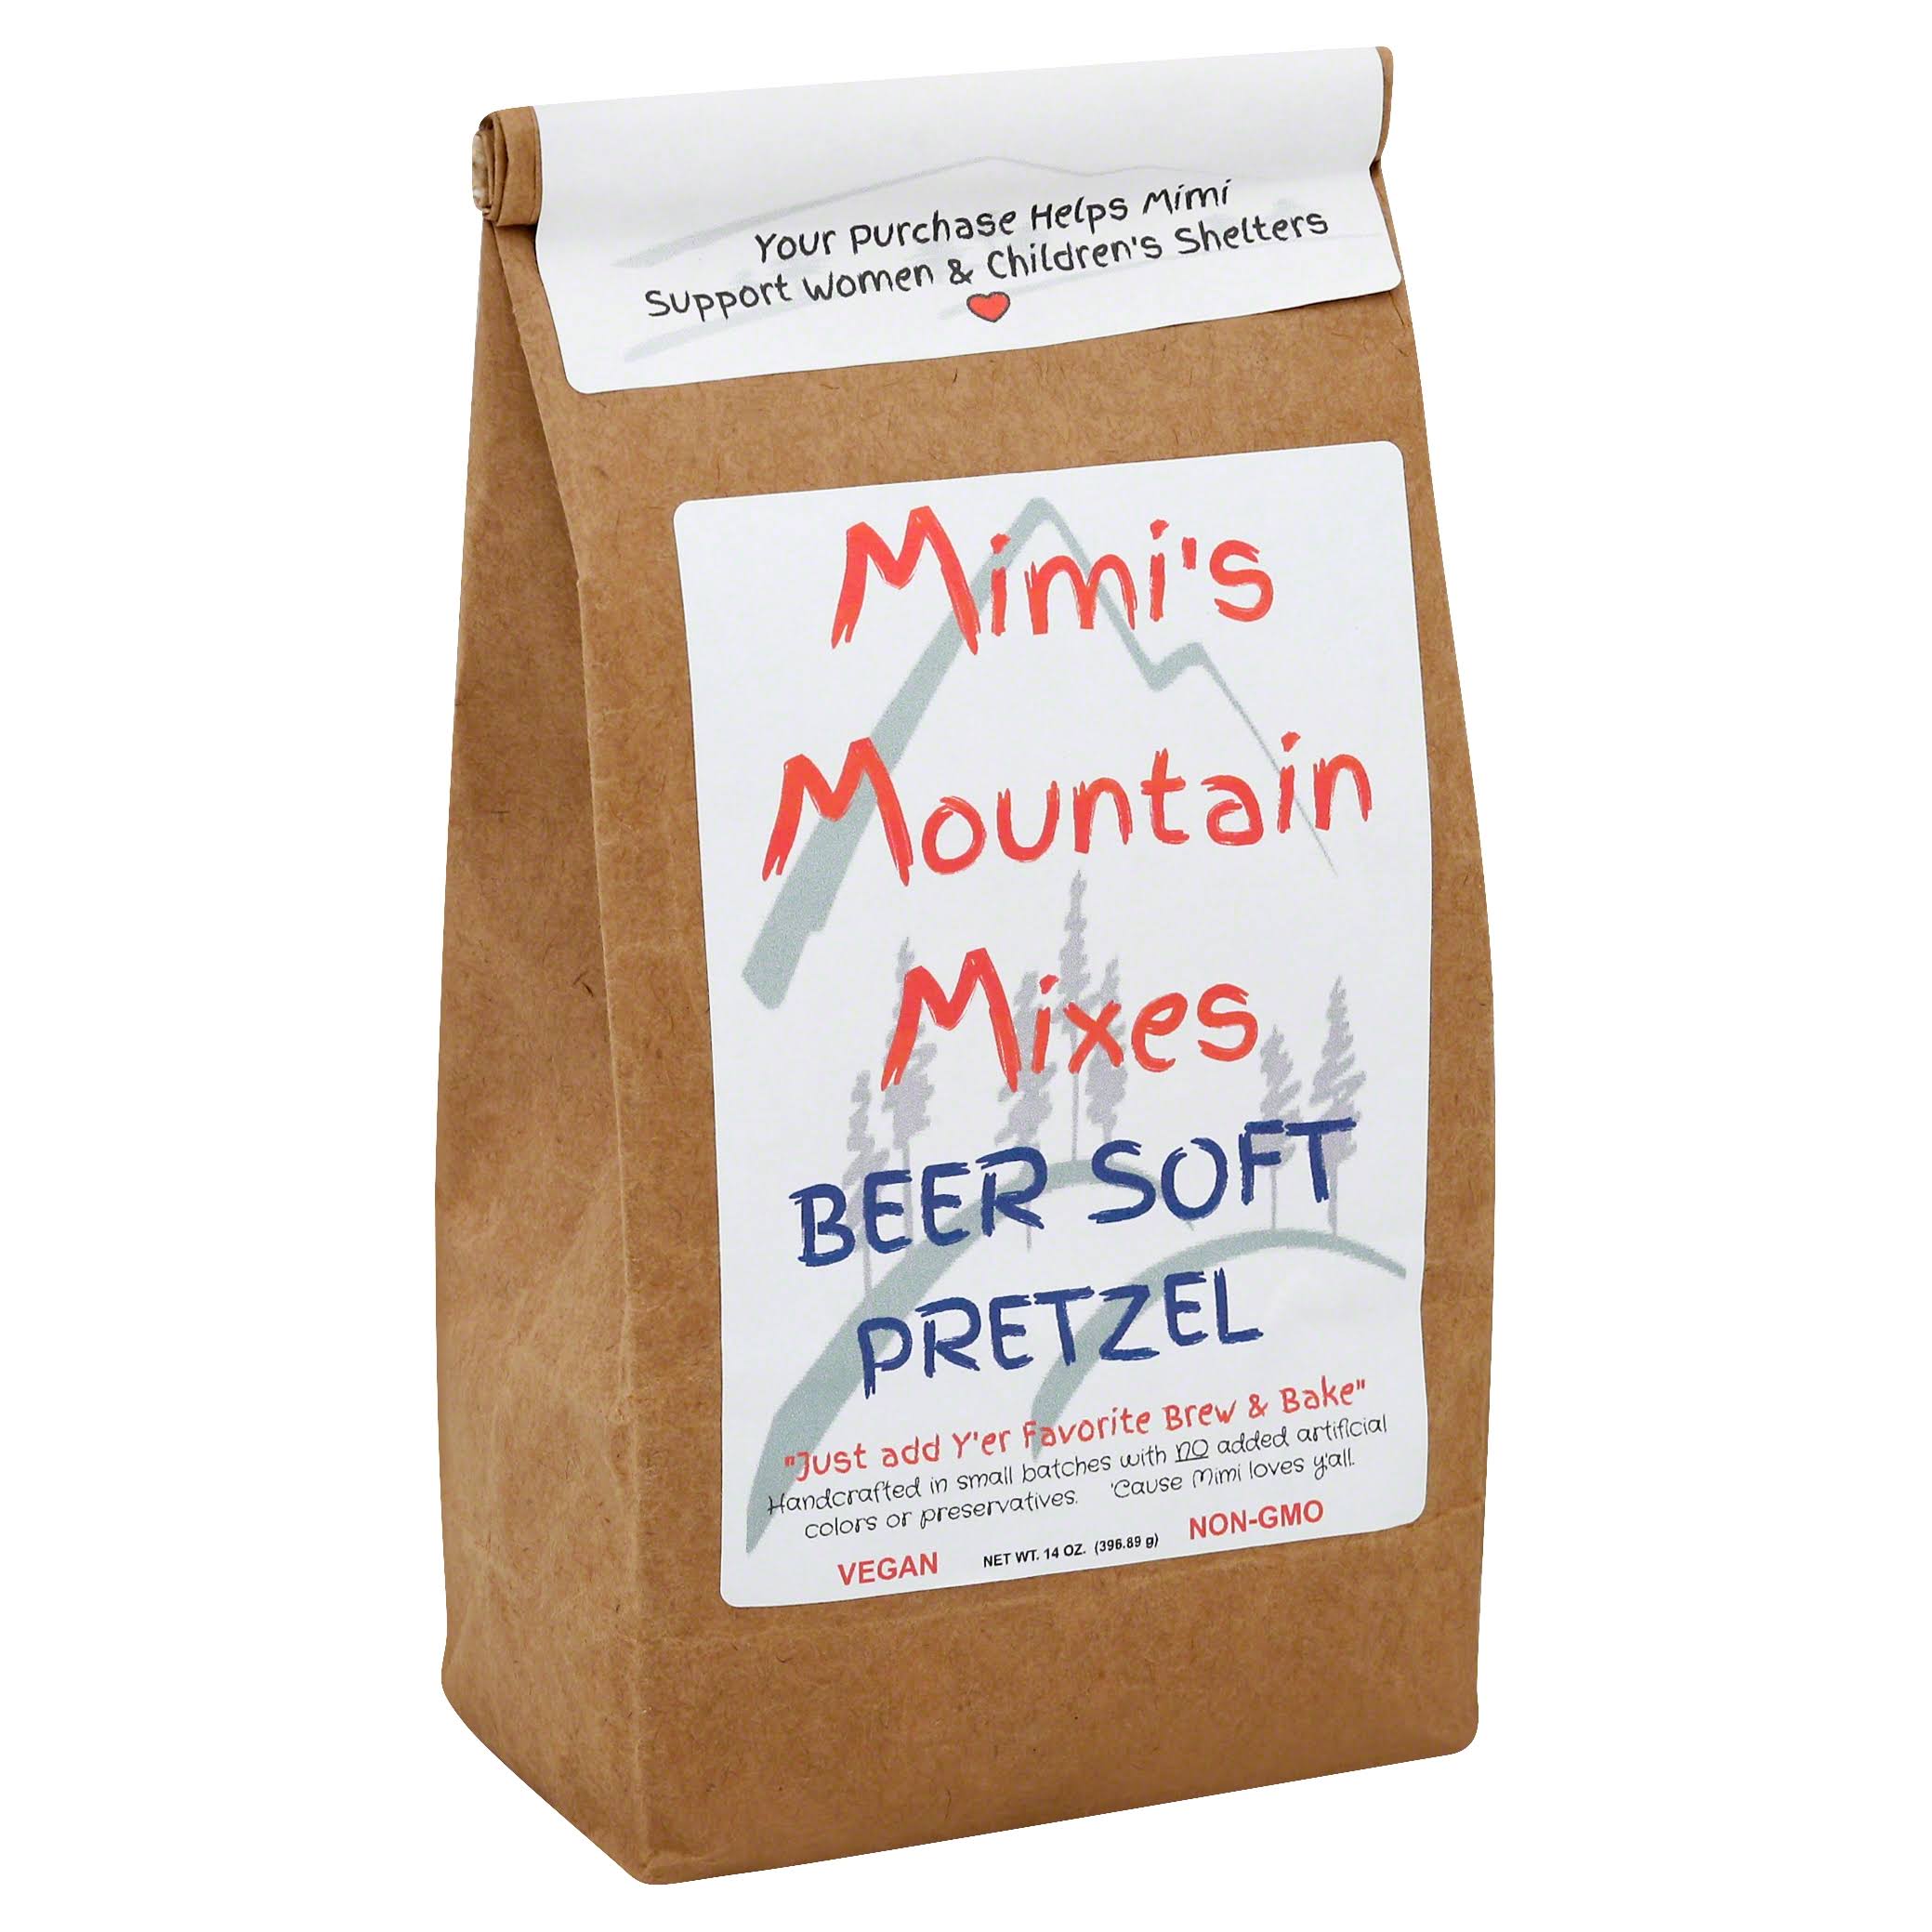 Mimis Mountain Mixes Beer Soft Pretzel - 14 oz